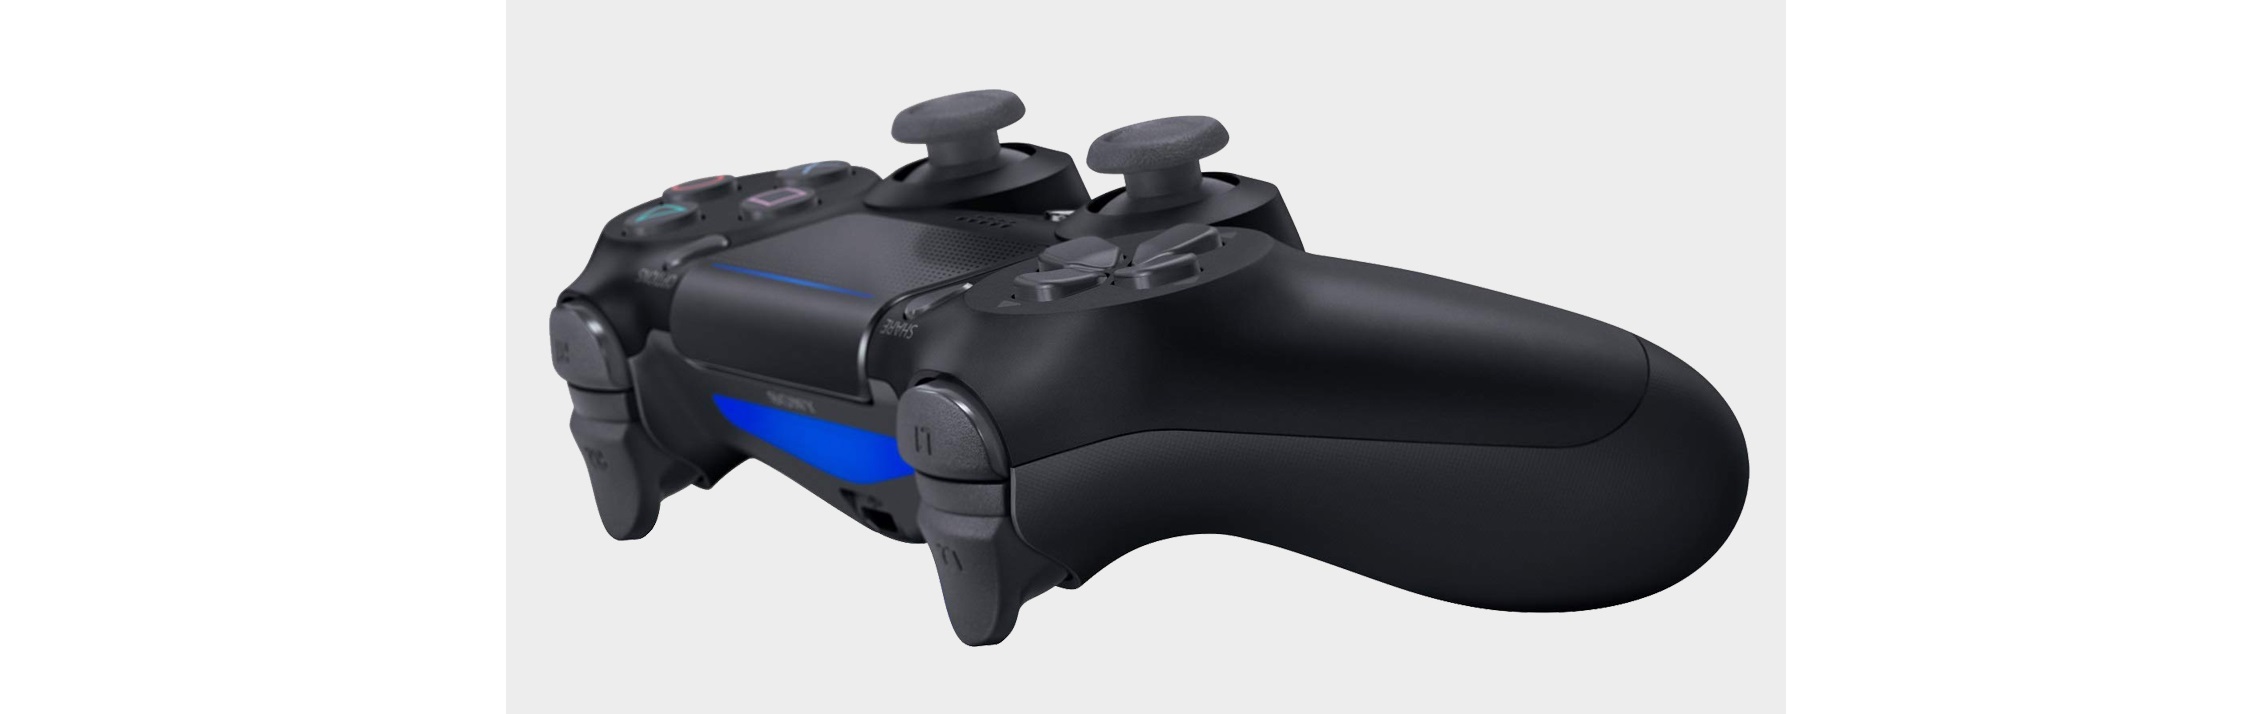 Tay cầm chơi game không dây PS4 Sony DUALSHOCK 4 Controller Đỏ pha lê CUH-ZCT2G 18 có thiết kế analog với trigger tinh chỉnh